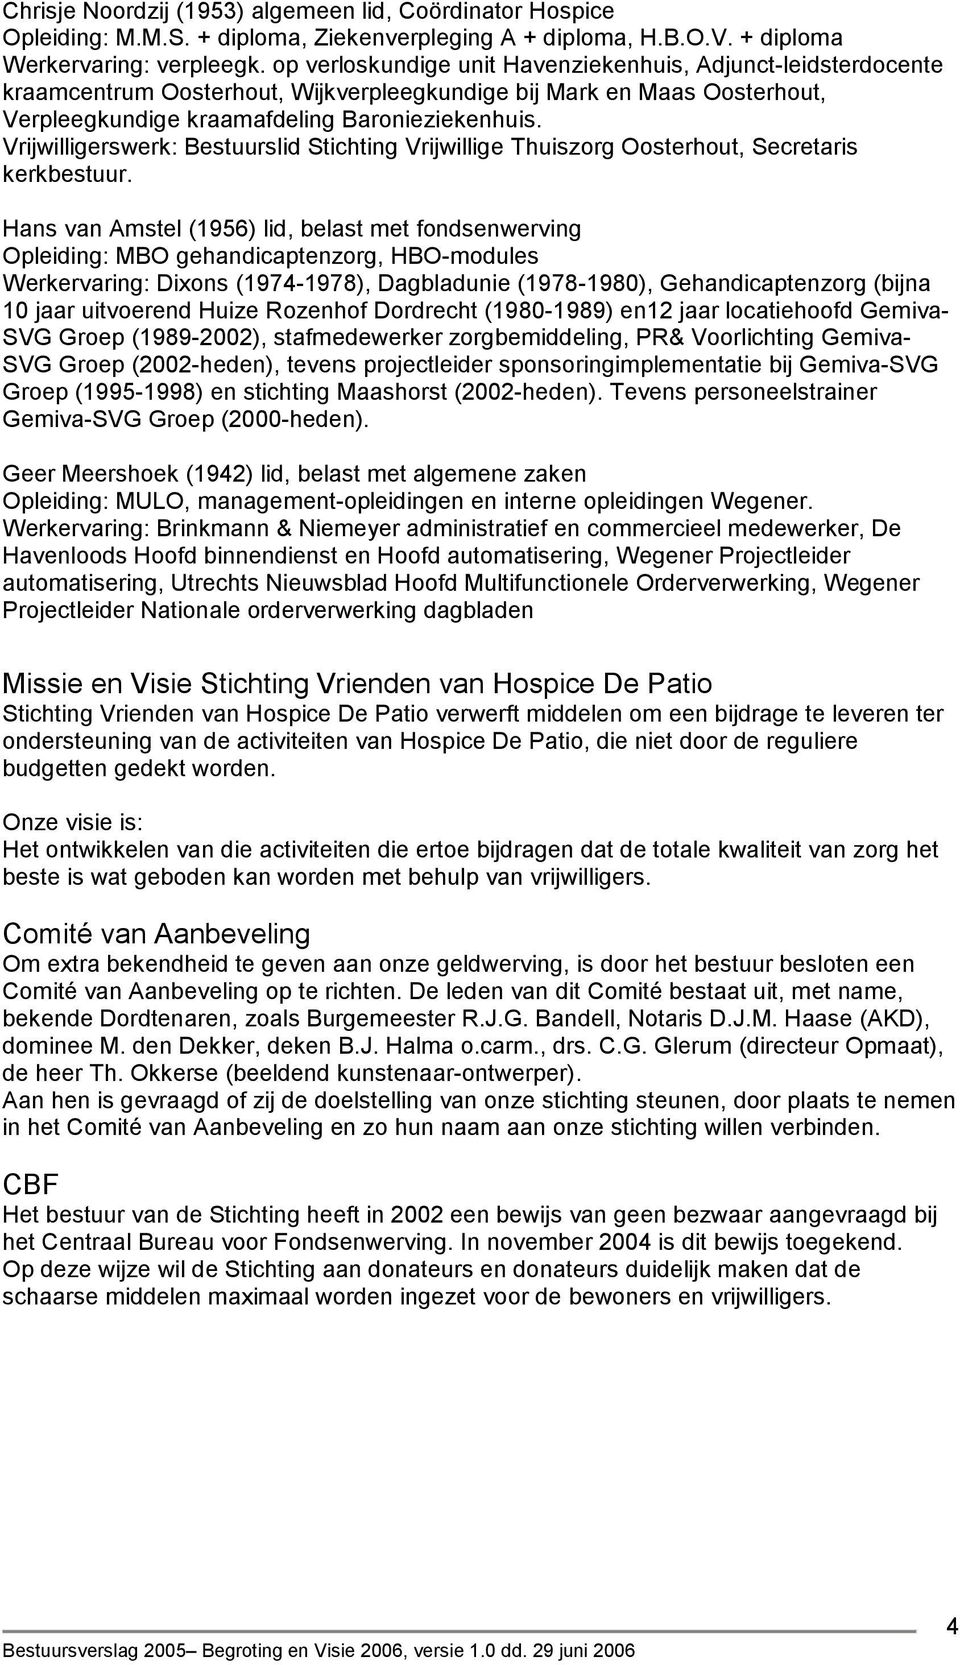 Vrijwilligerswerk: Bestuurslid Stichting Vrijwillige Thuiszorg Oosterhout, Secretaris kerkbestuur.